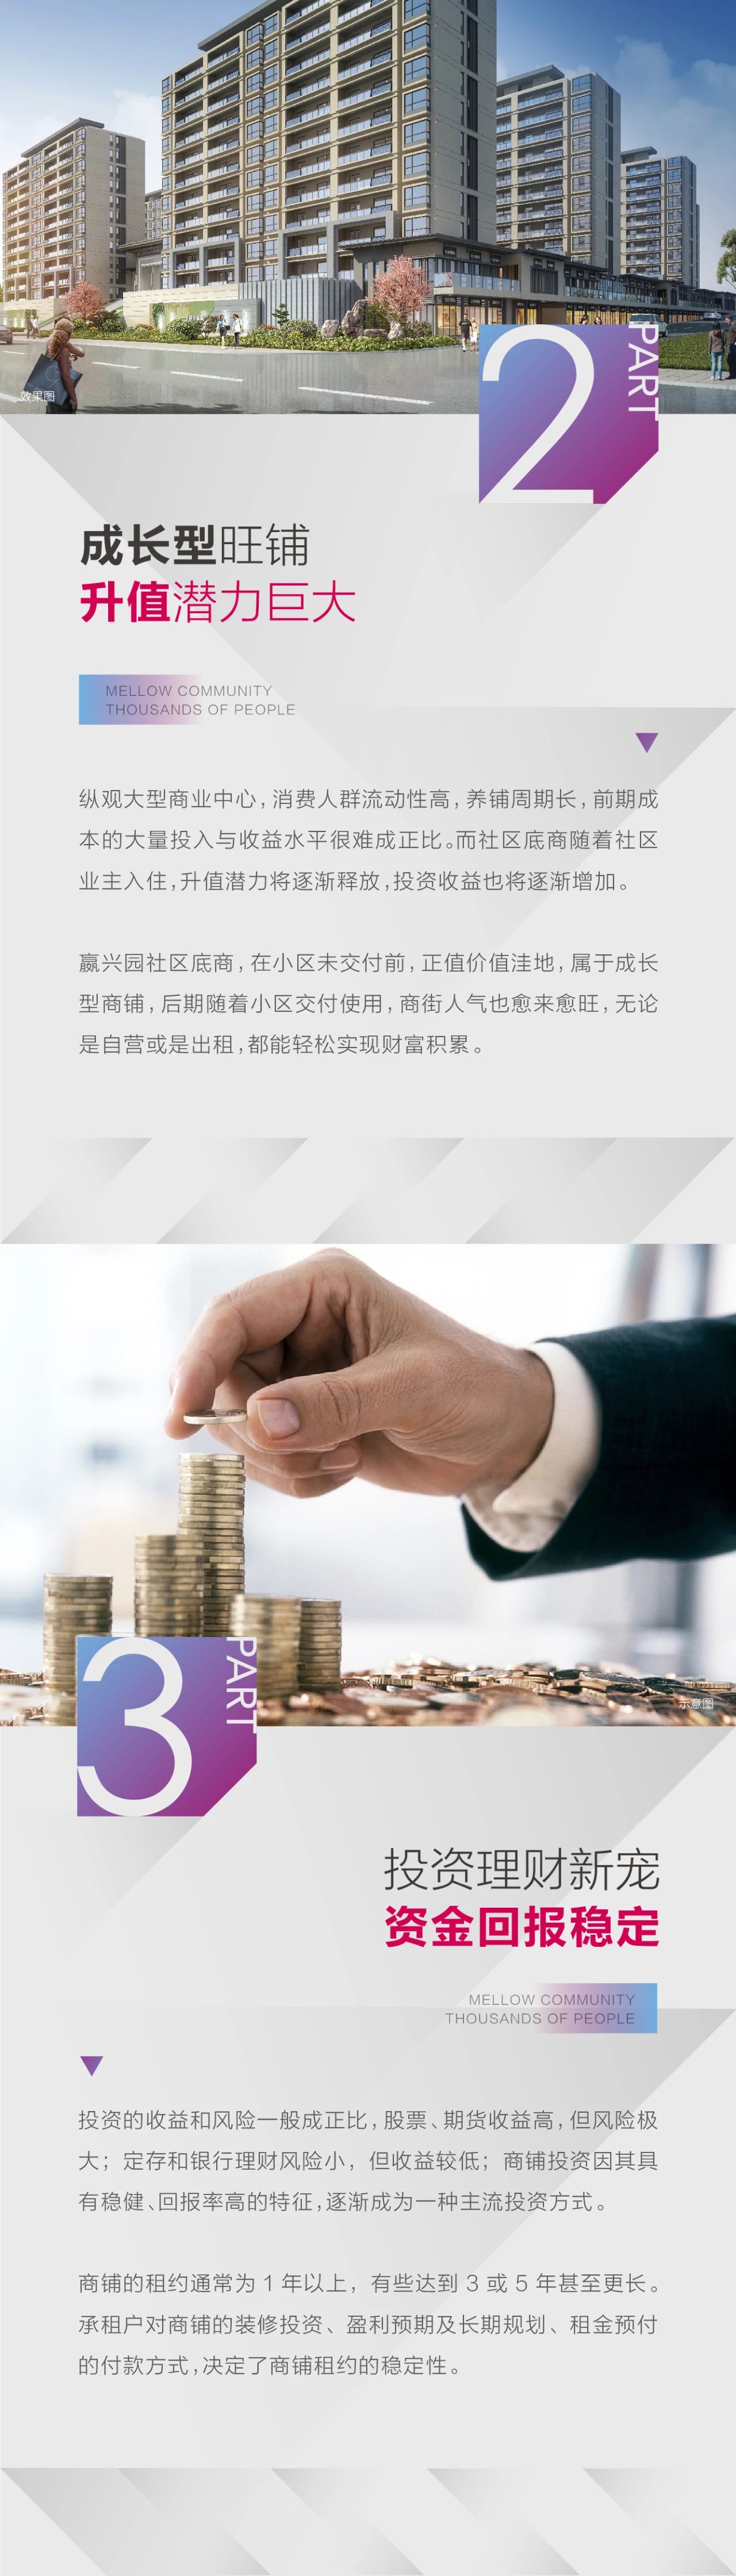 嬴兴园丨投资社区底商，抢占生活最后一公里财富(图3)